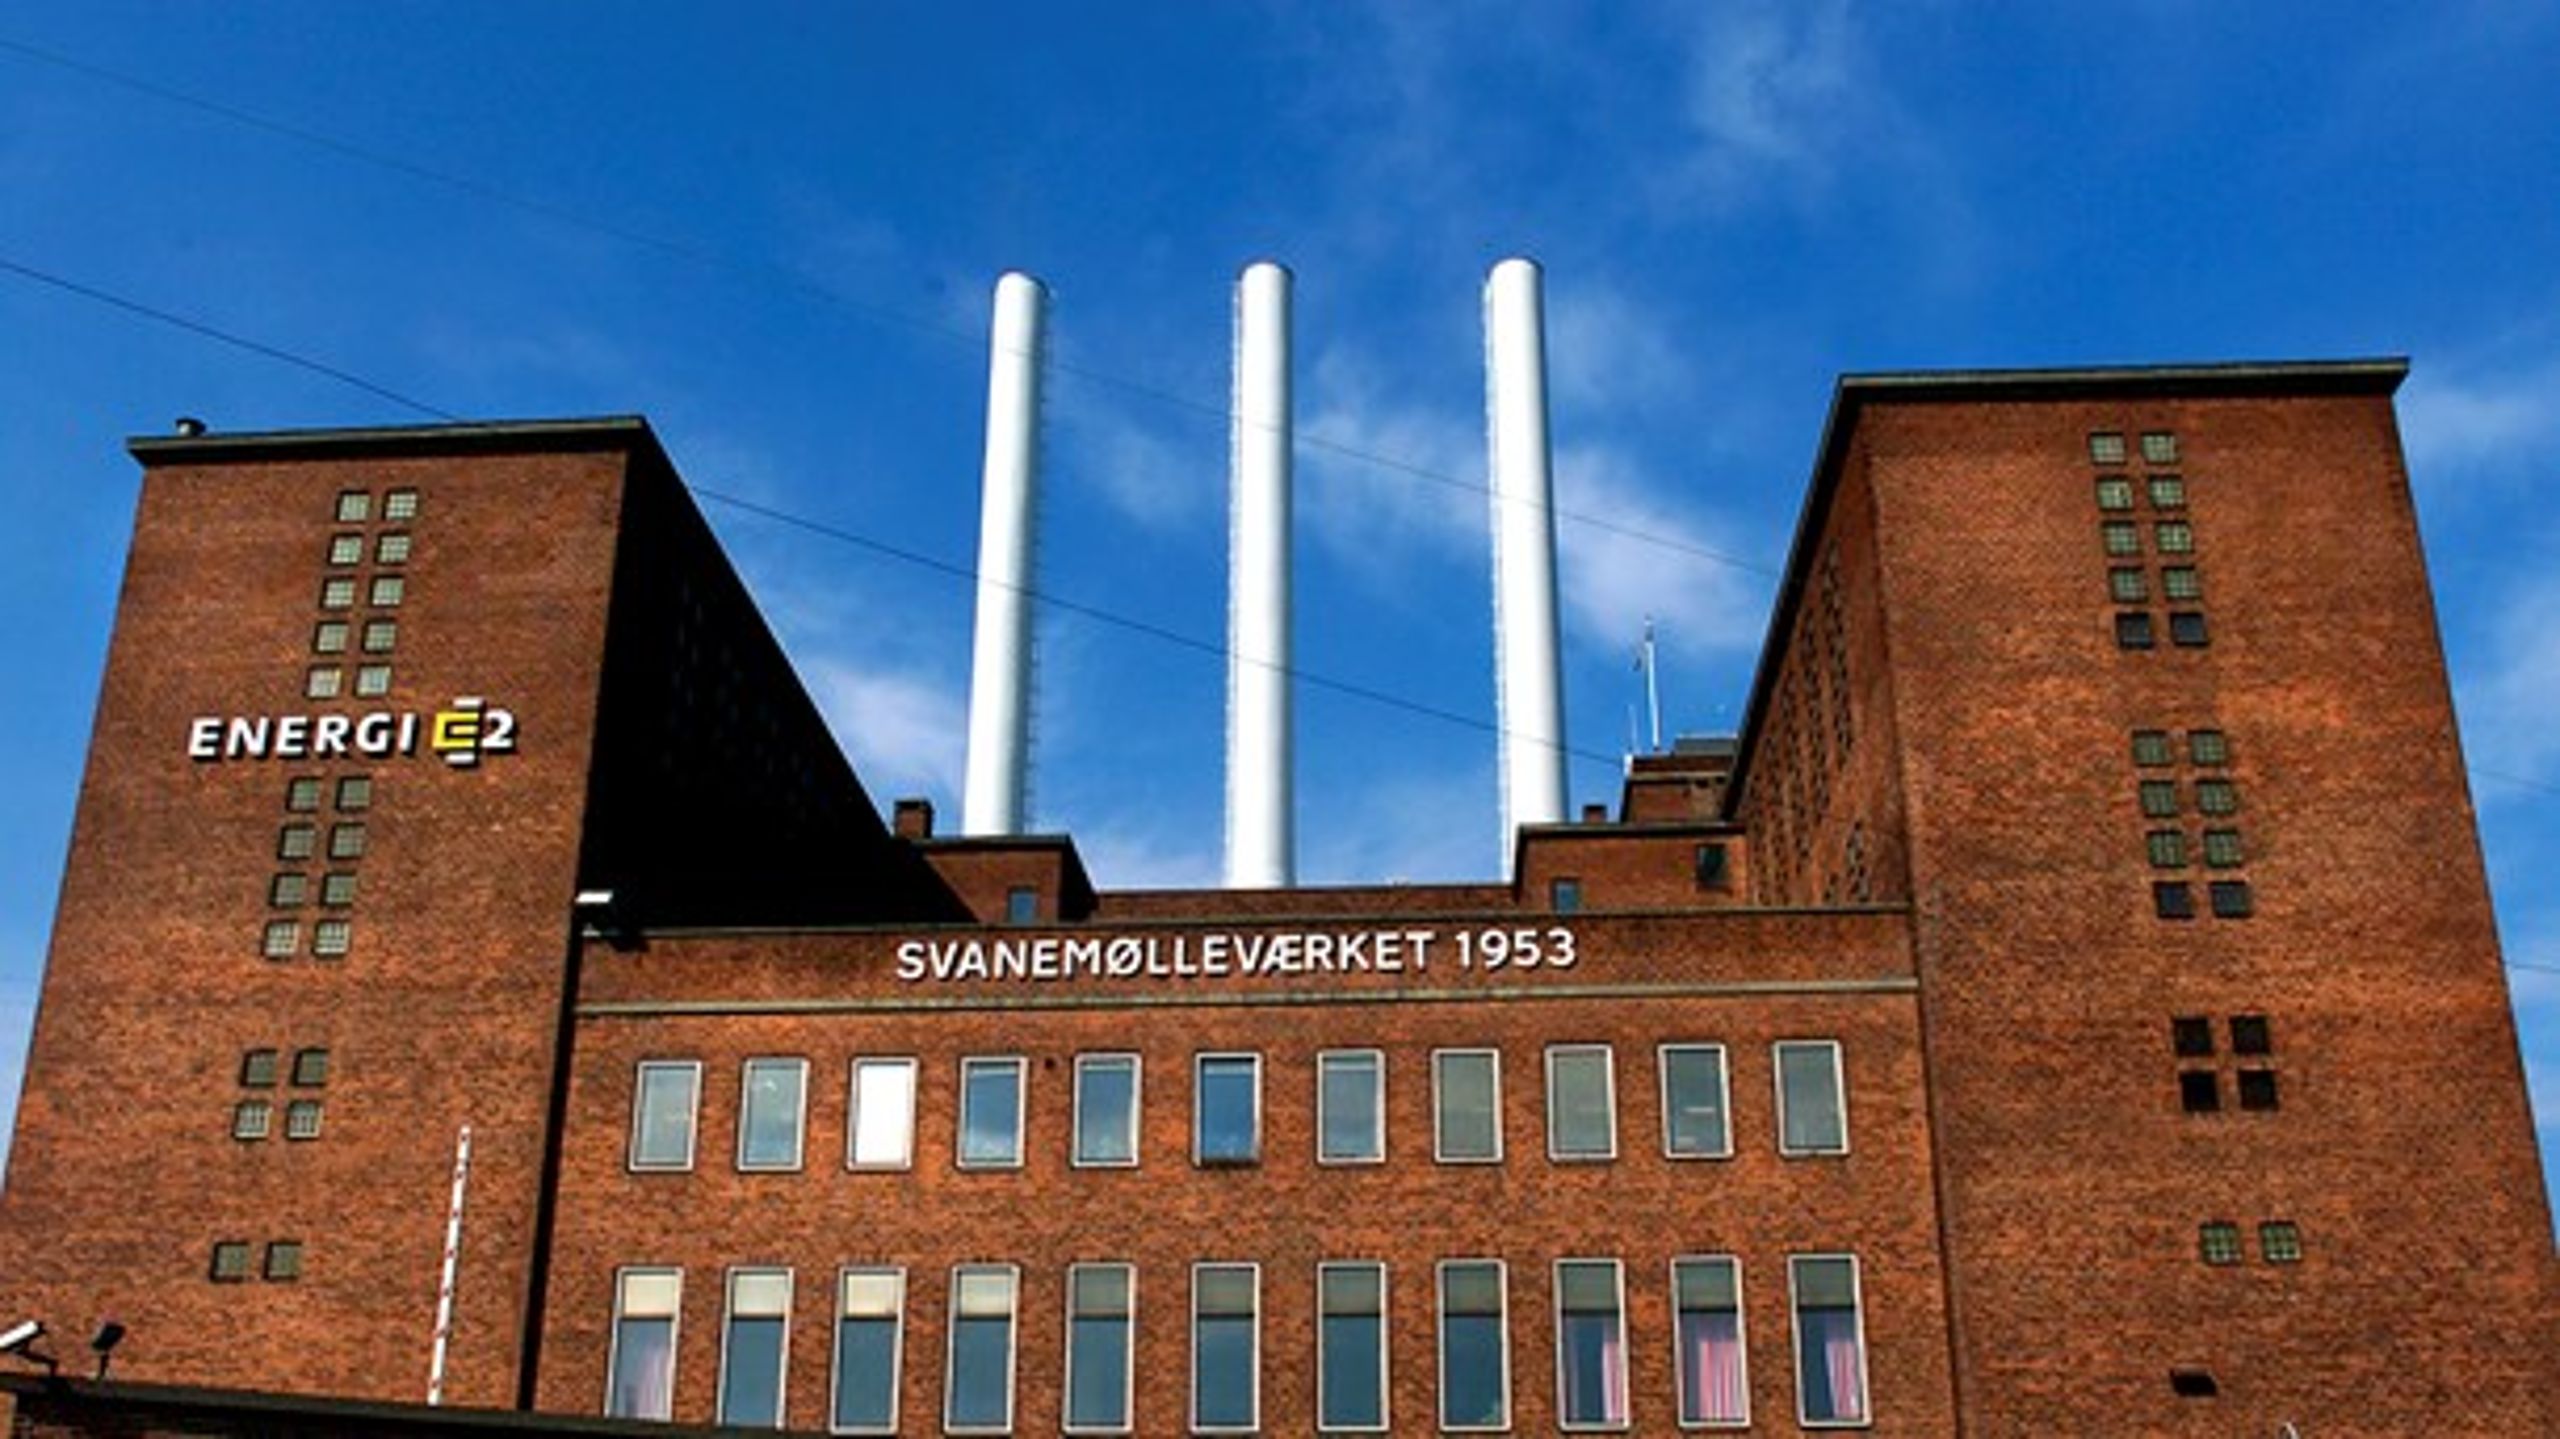 Teknisk Museum drømmer om at flytte ind i Svanemølleværkets bygninger i Nordhavn. Museet vil dermed blive et af flere naturvidenskabelige museer omkring Østerbro i København.